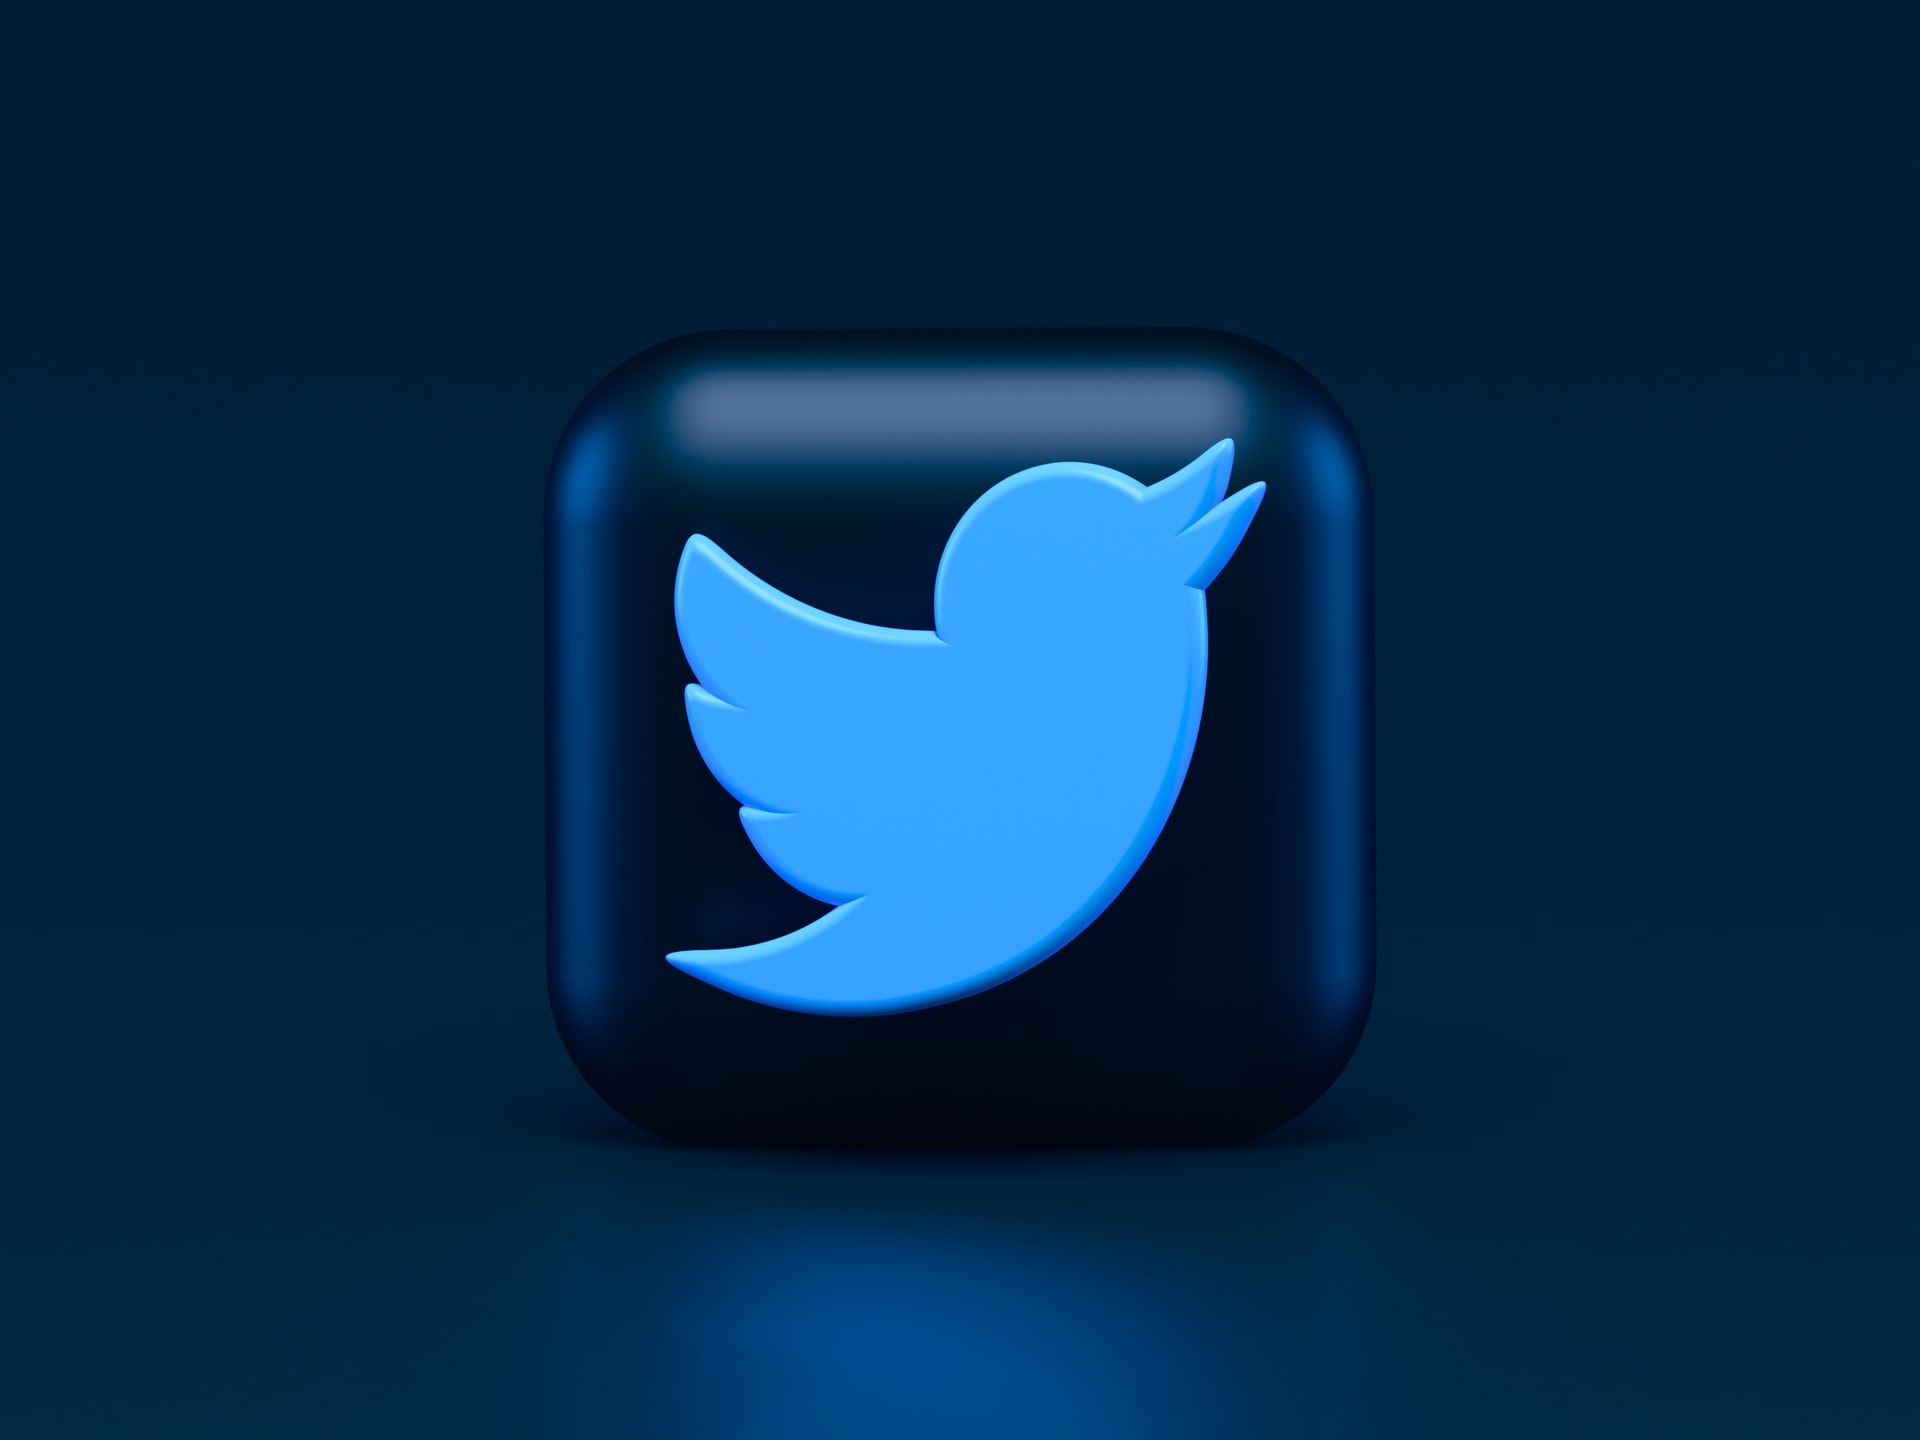 ماذا تعرف عن خدمة "الرسائل المشفرة" التي تنوي "تويتر" إطلاقها؟ إليك التفاصيل